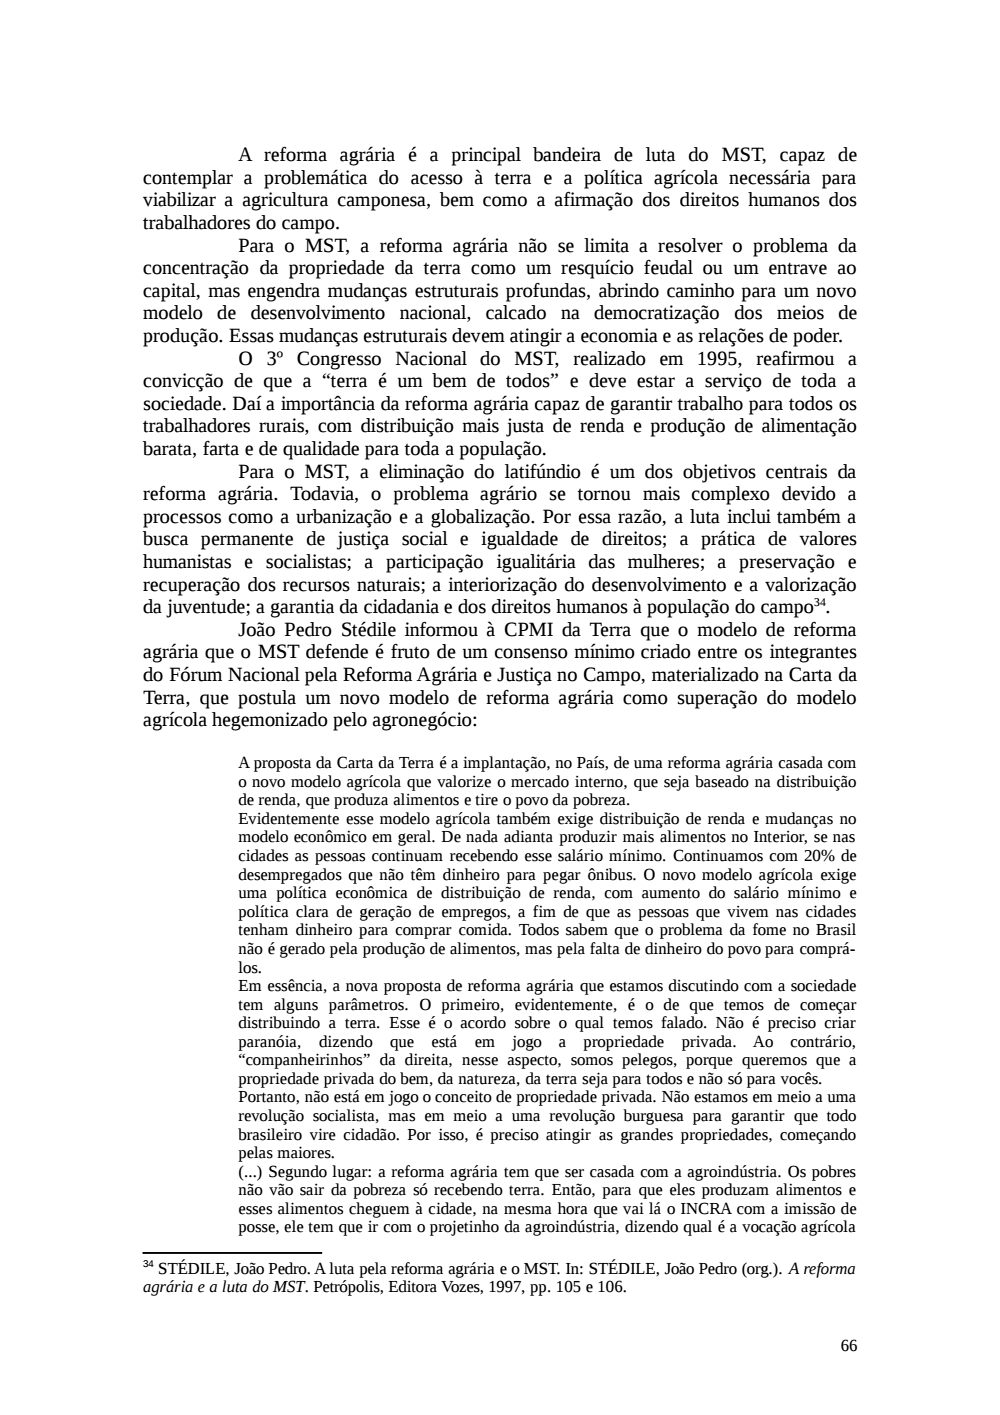 Page 66 from Relatório final da comissão